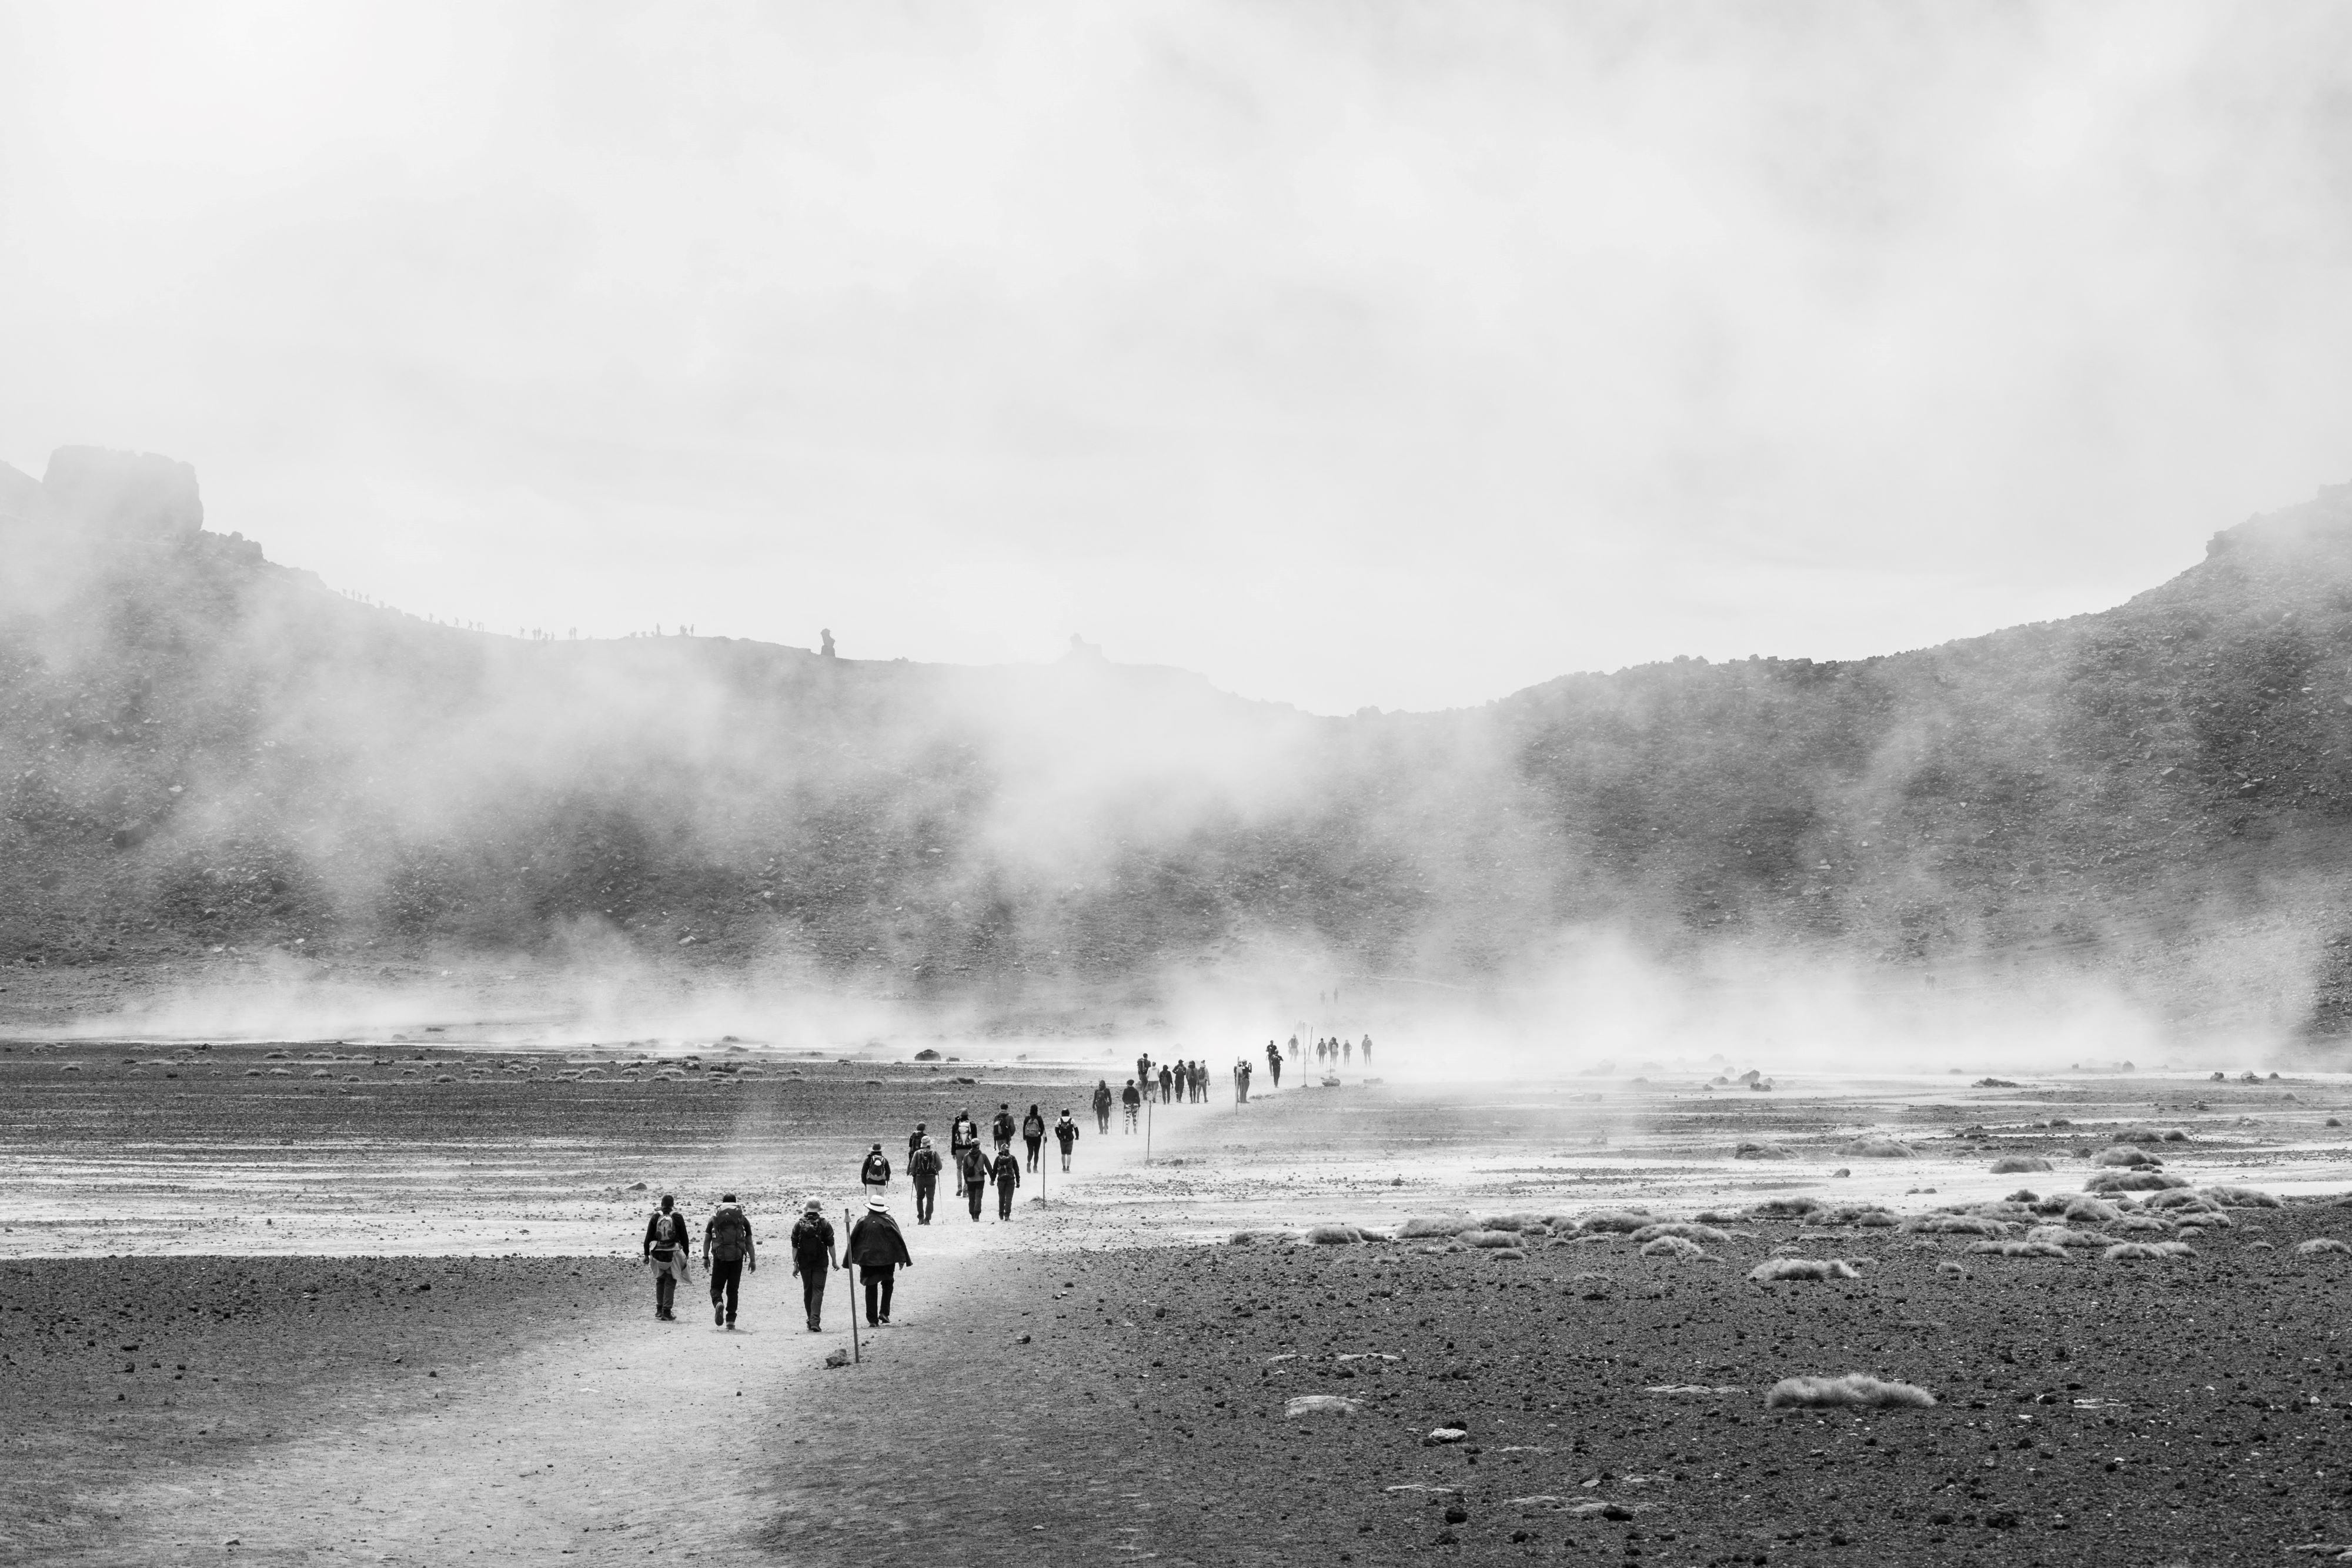 People walking across rocky terrain